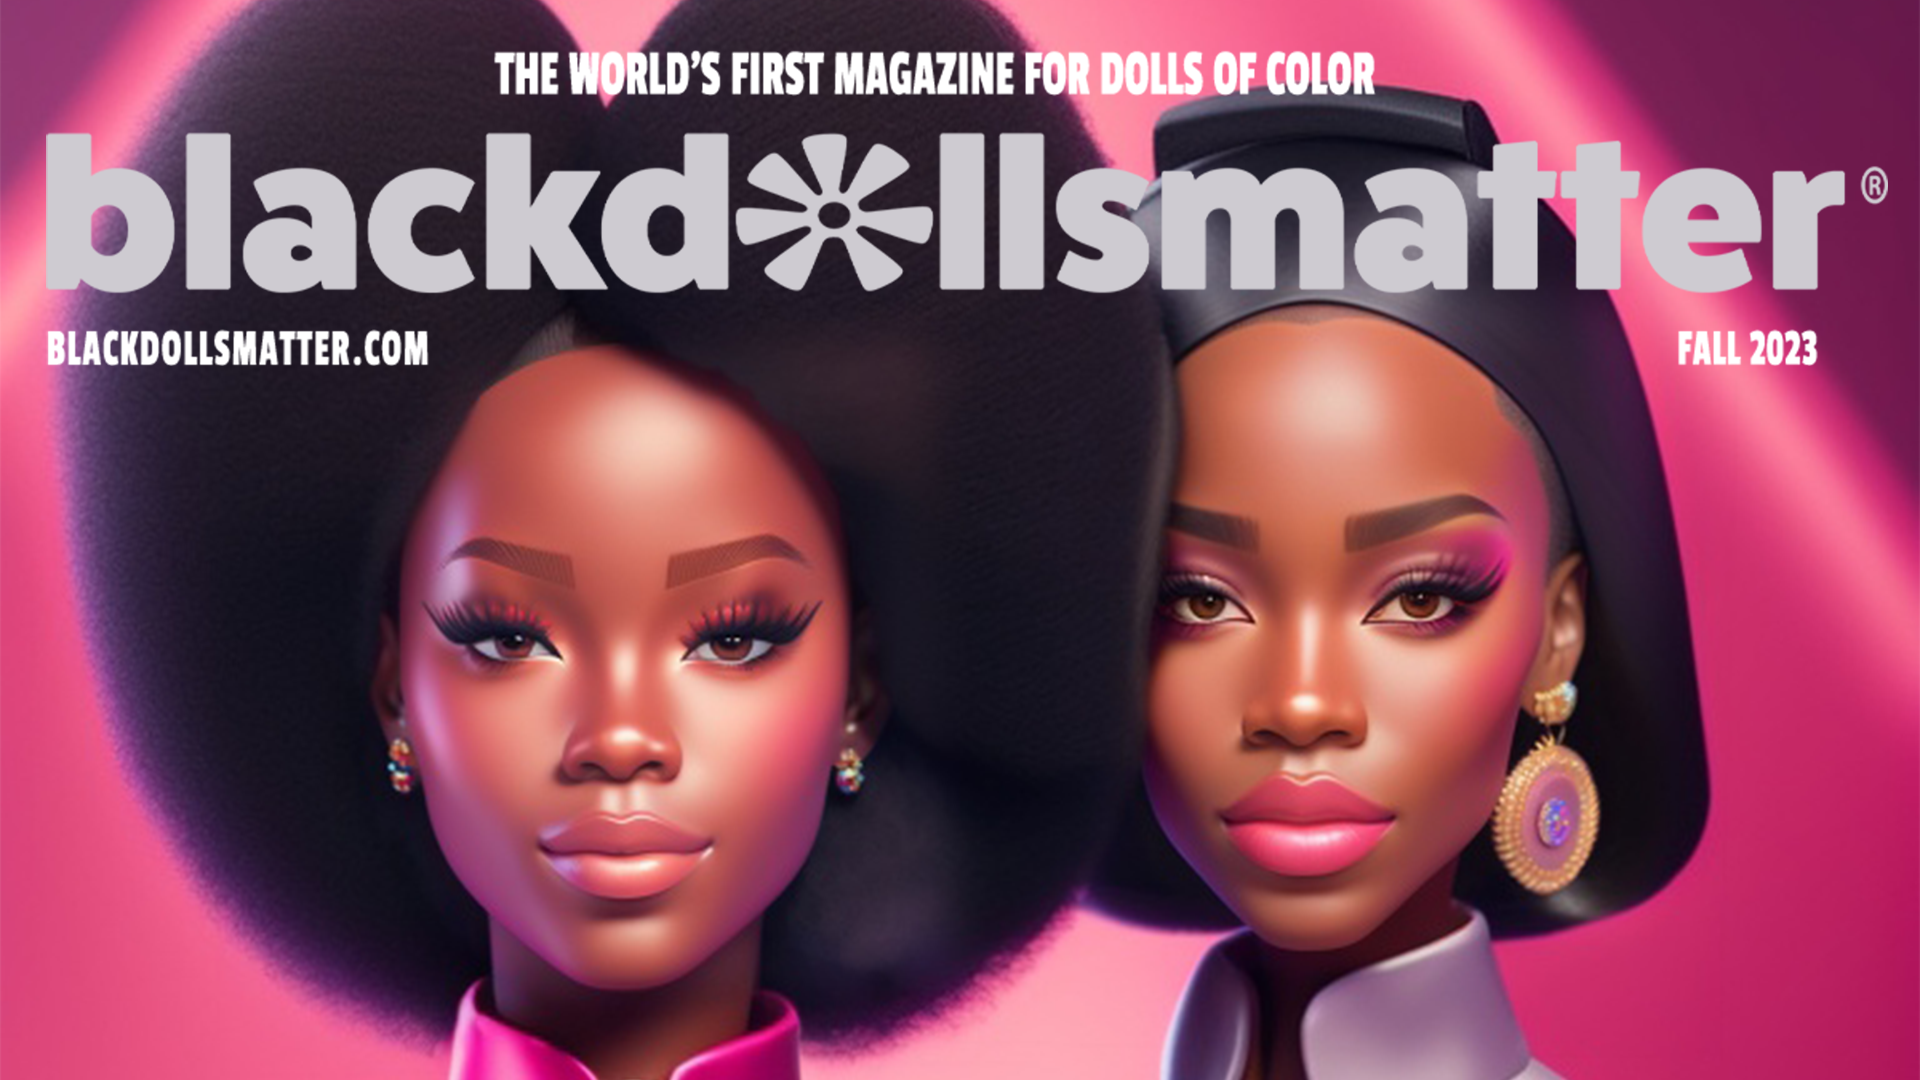 Black Dolls Matter® Blog chronicles black doll news and events., Black Dolls Matter® Magazine, BLACK DOLLS MATTER